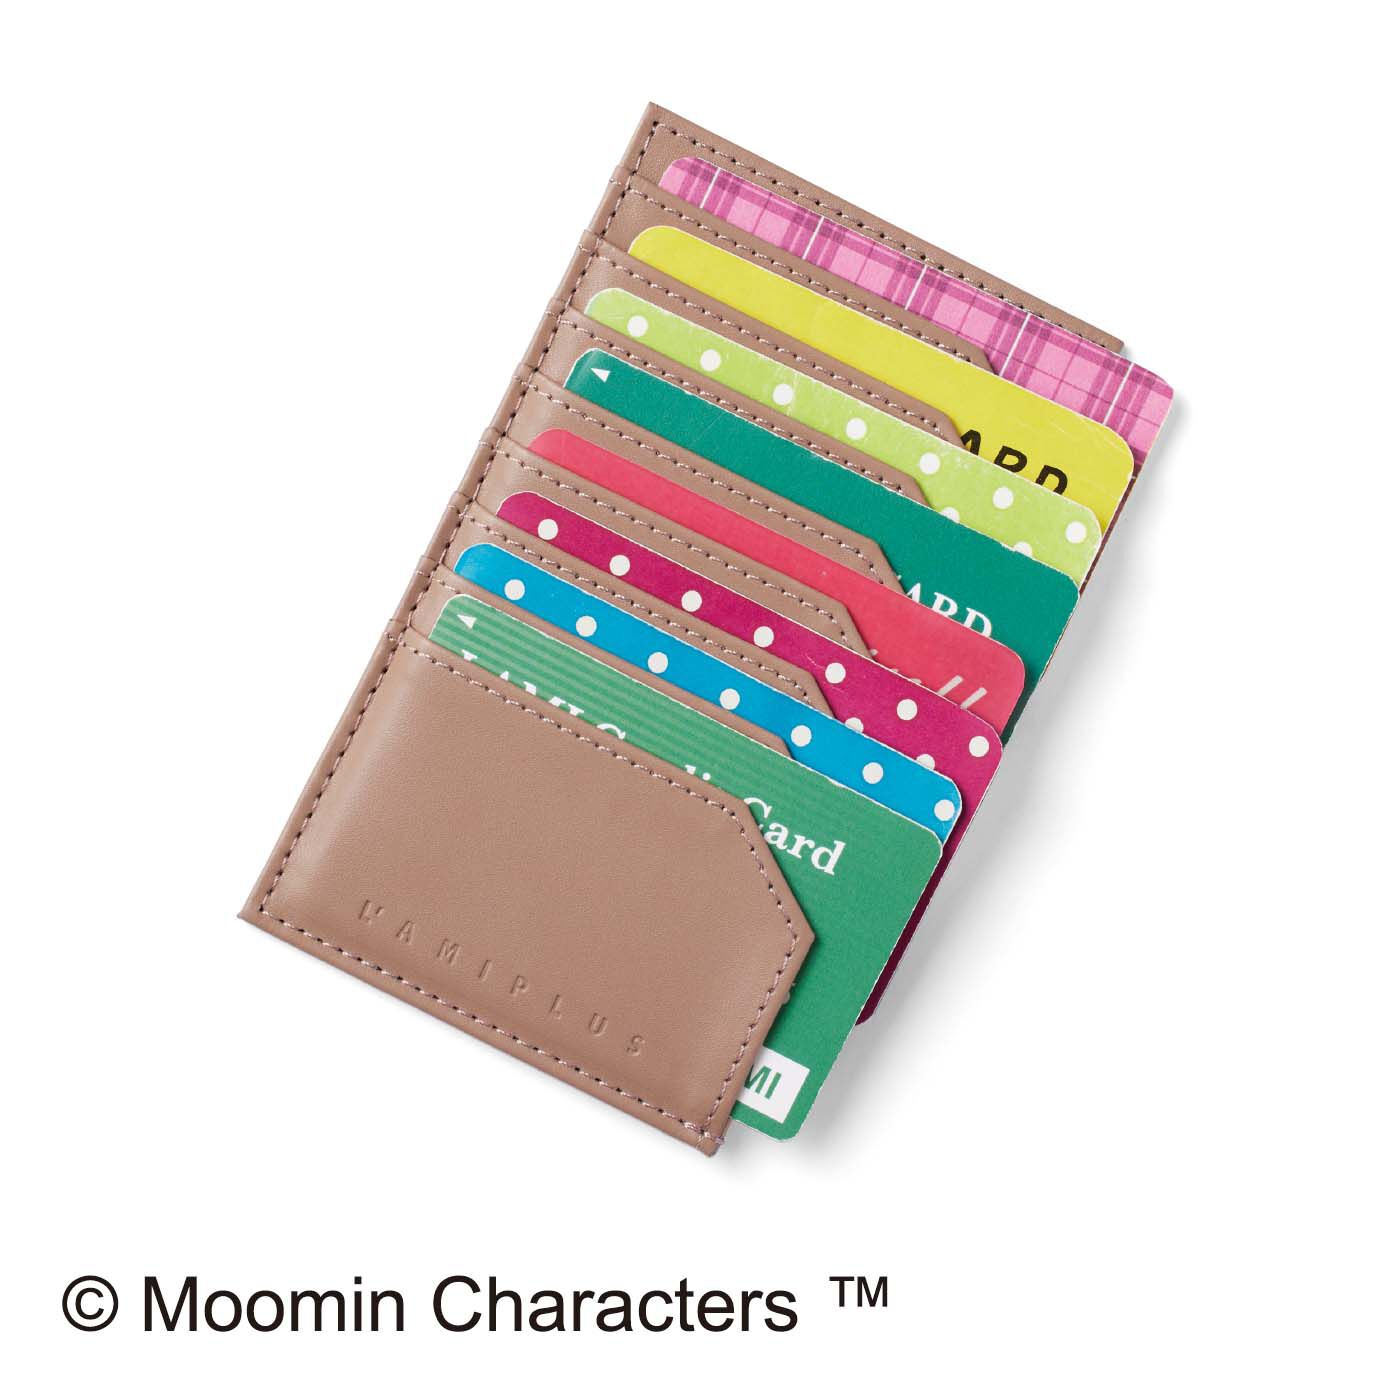 L'AMIPLUS|MOOMIN×ラミプリュス　クロスボディーウォレット〈リトルミイ〉|カードケースは単独でも使えます。よく使うカードをまとめて、お財布やバッグにイン。ラミプリュスのロゴ刻印入り。